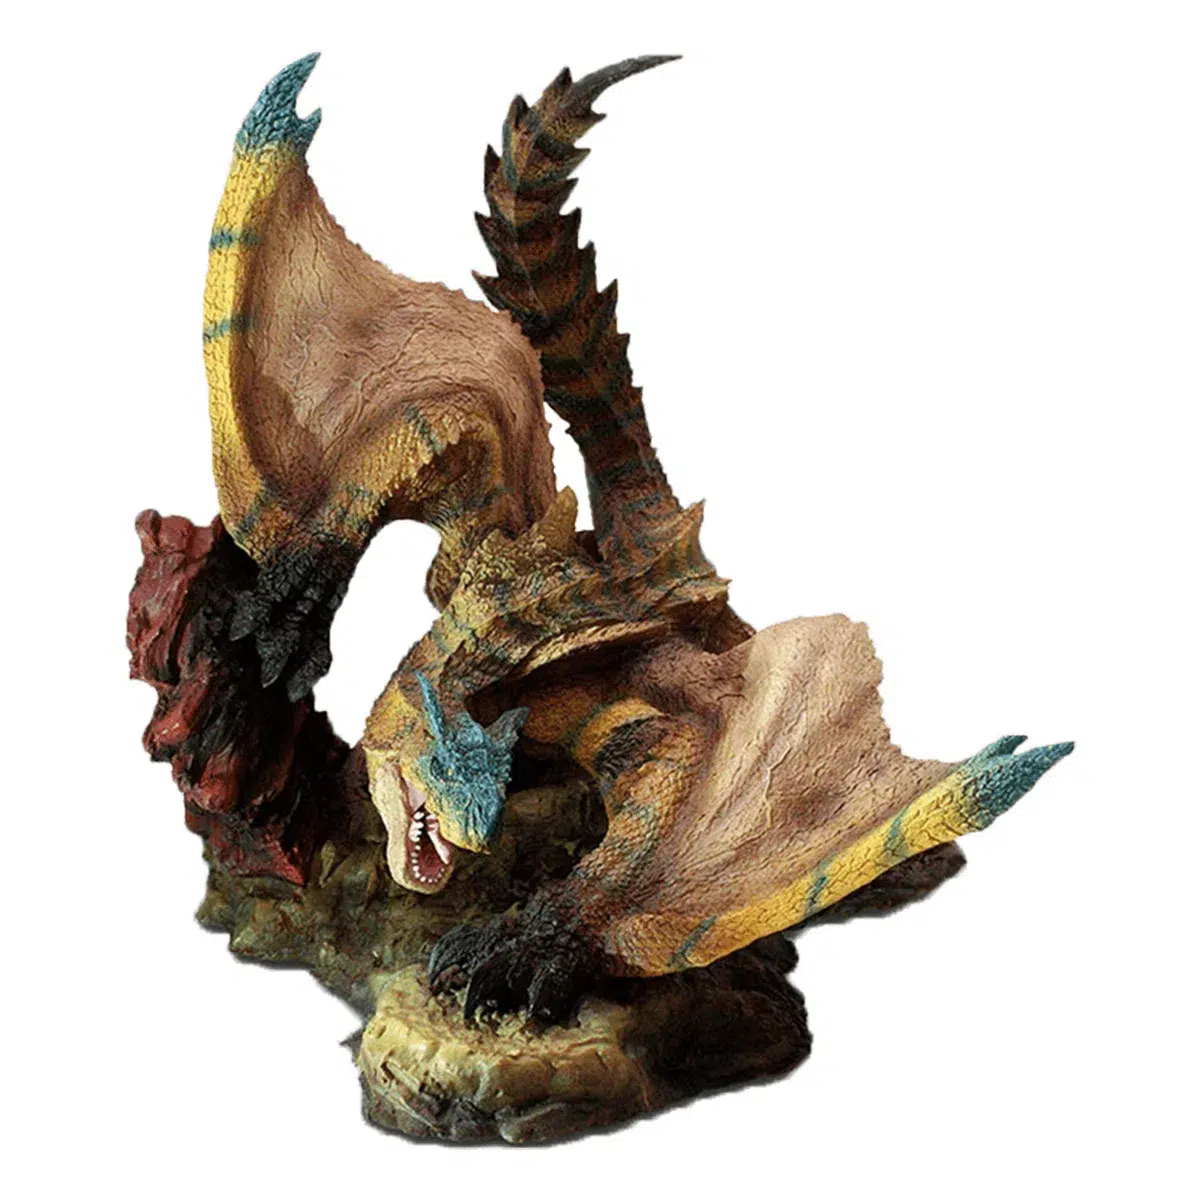 Monster Hunter World Statue "Tigrex" Creator's Model